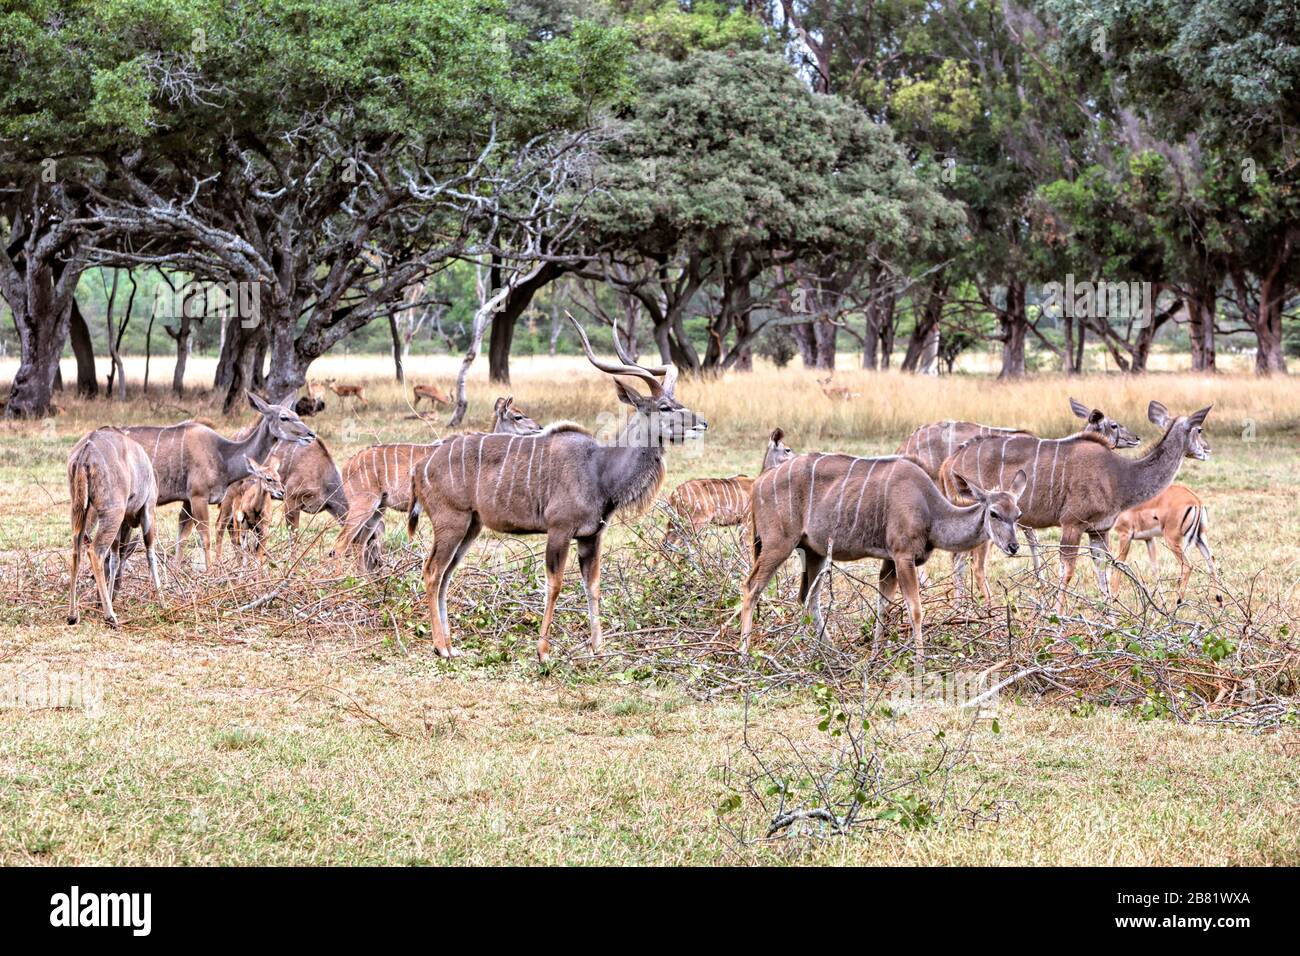 El toro mayor kudo protege a los terneros y vacas mientras pastan, vigilantes por los depredadores Foto de stock